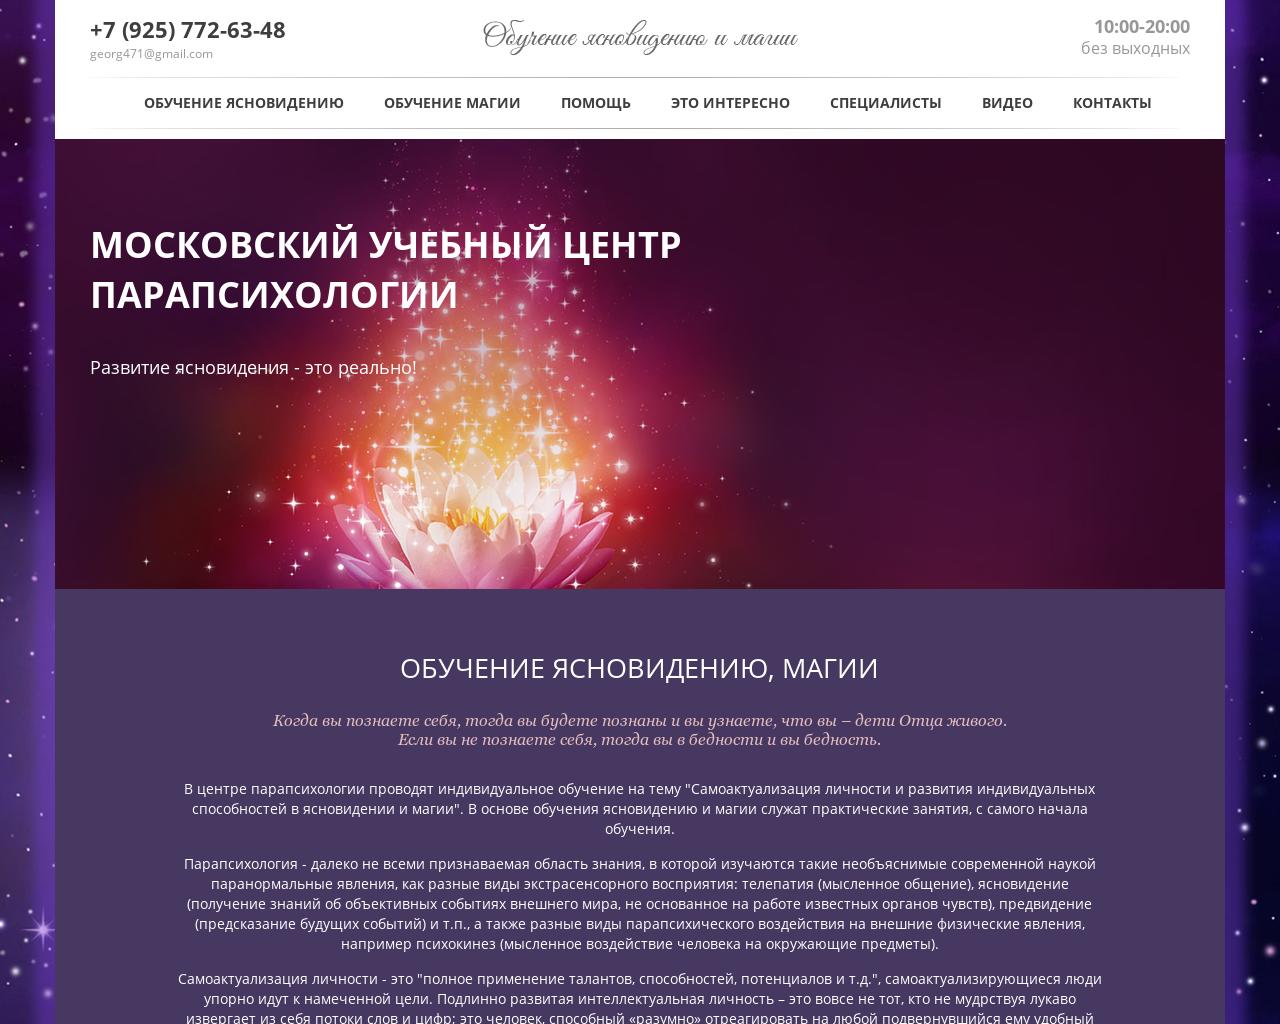 Изображение сайта mucp.ru в разрешении 1280x1024